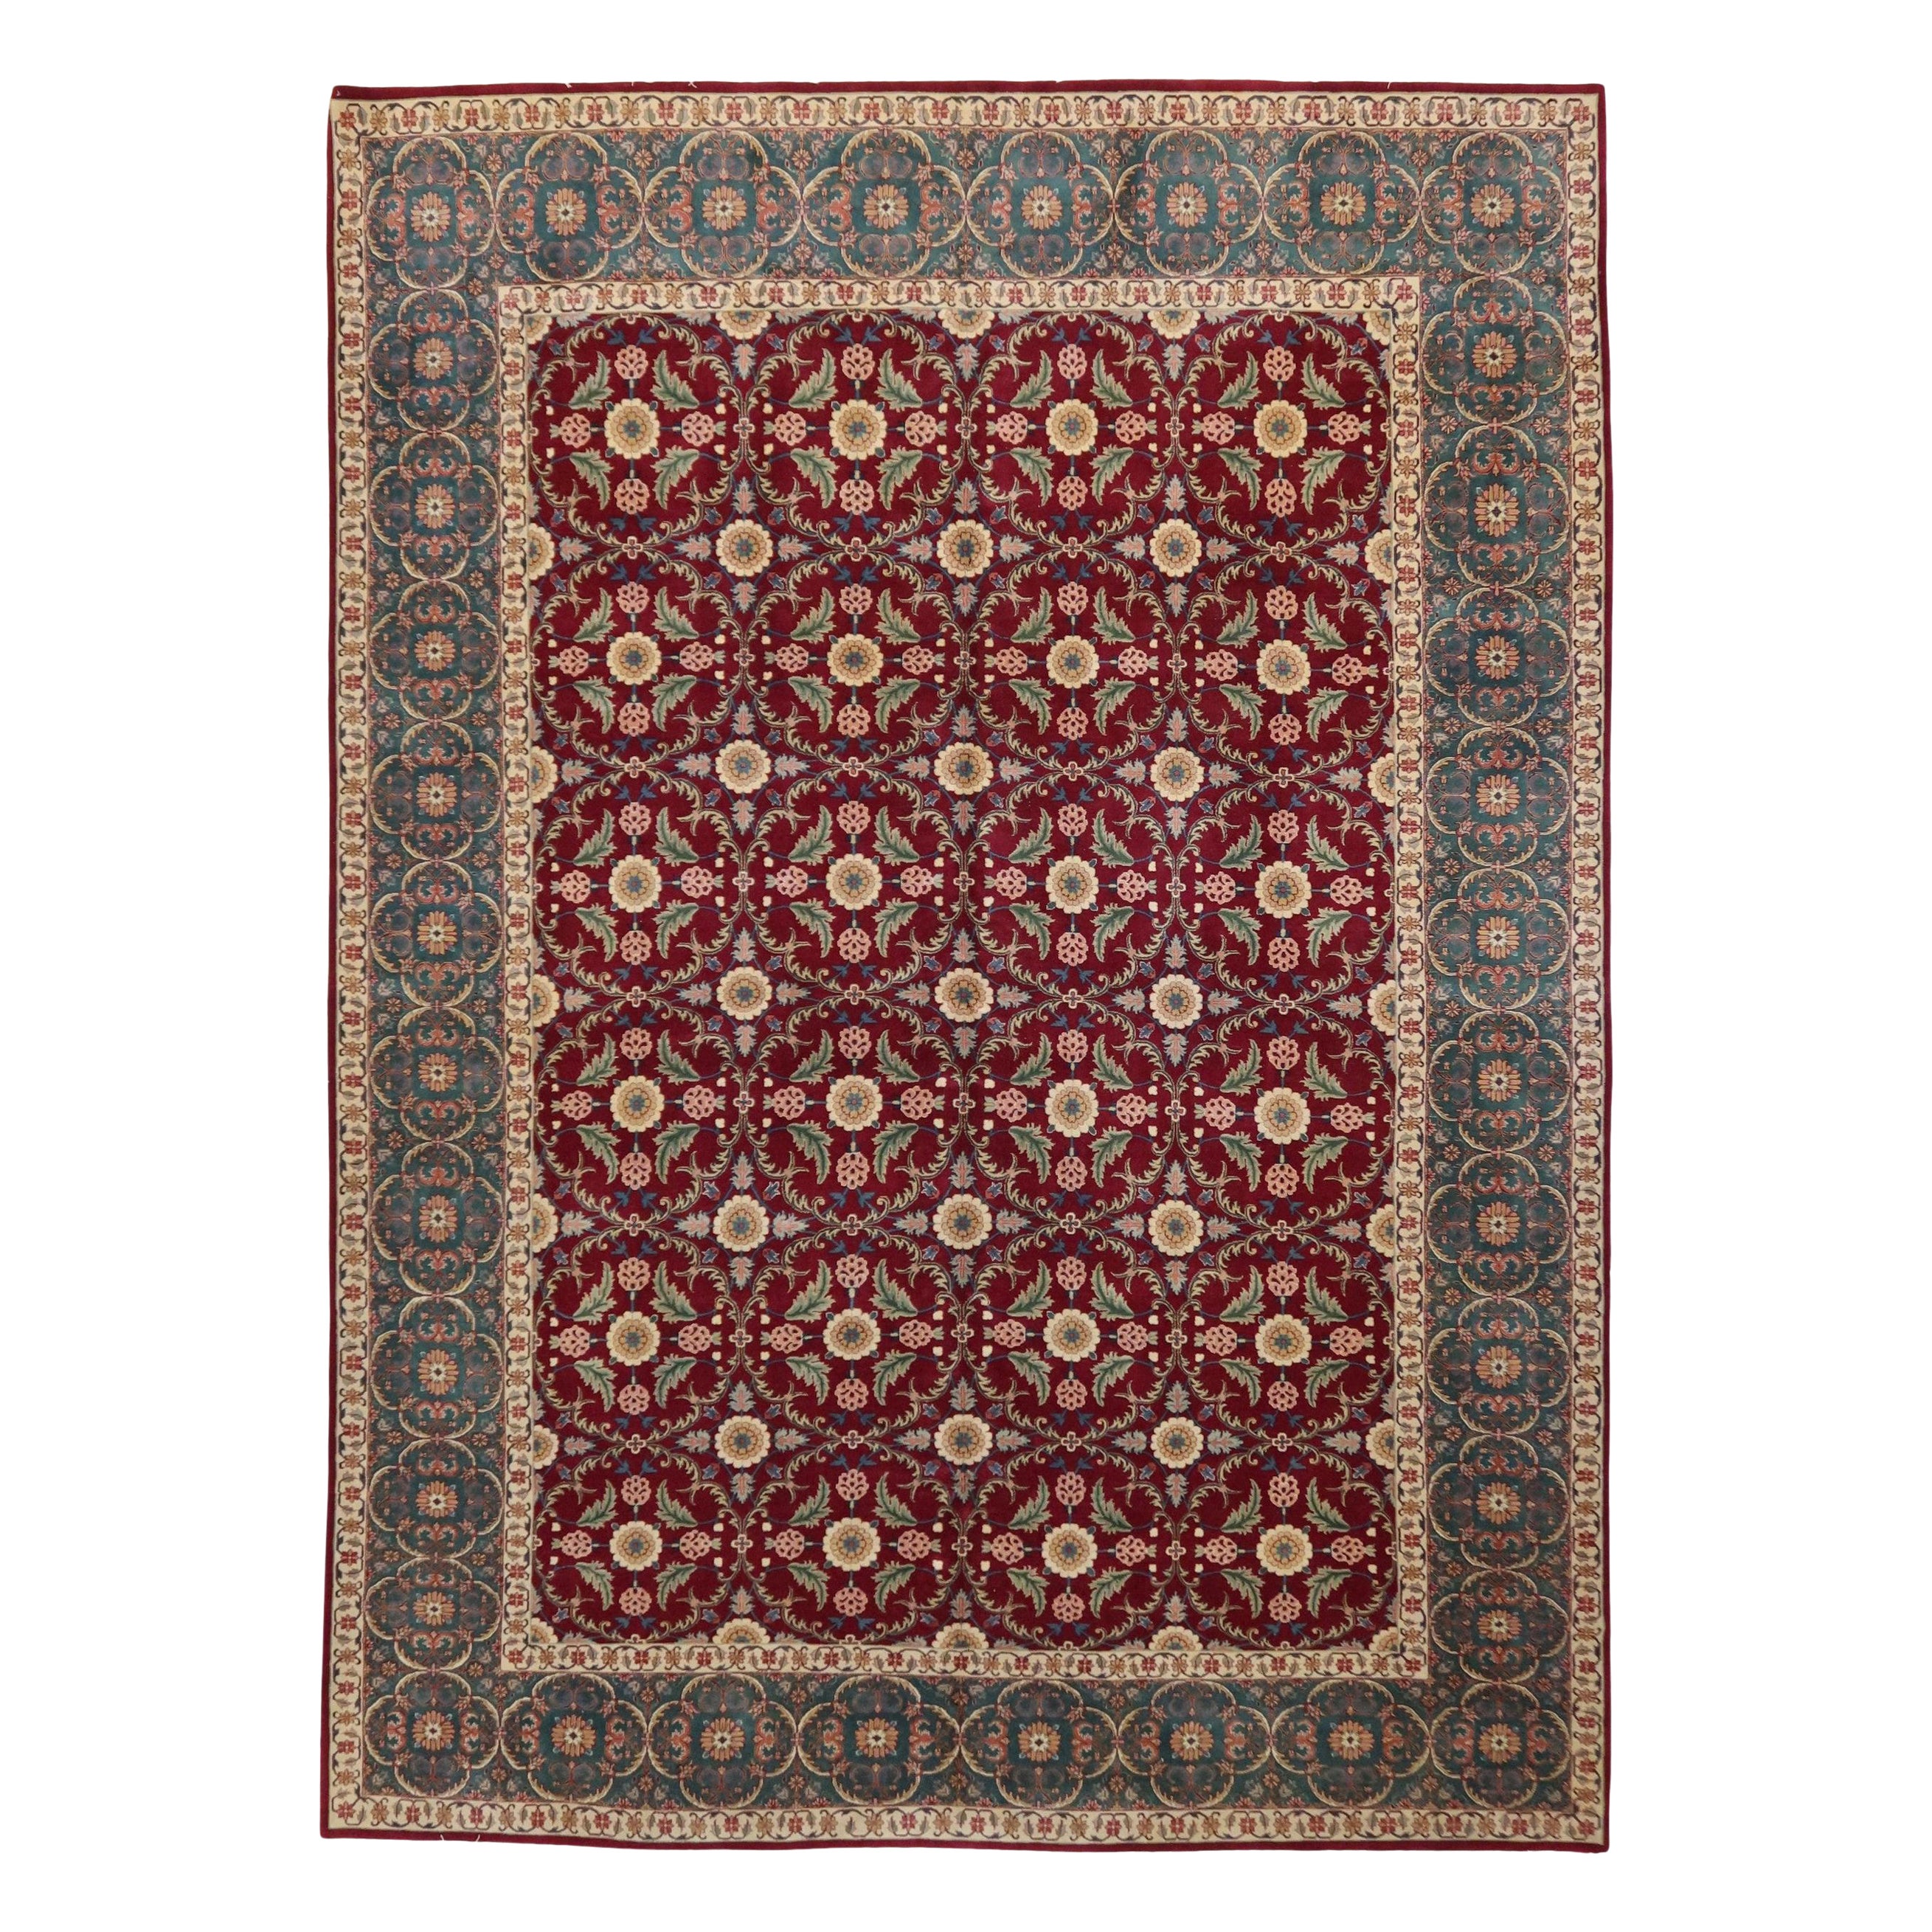 Agra Handgeknüpfter Teppich aus neuseeländischer Wolle in burgunderroter und grüner, feiner Qualität, auf Lager im Angebot